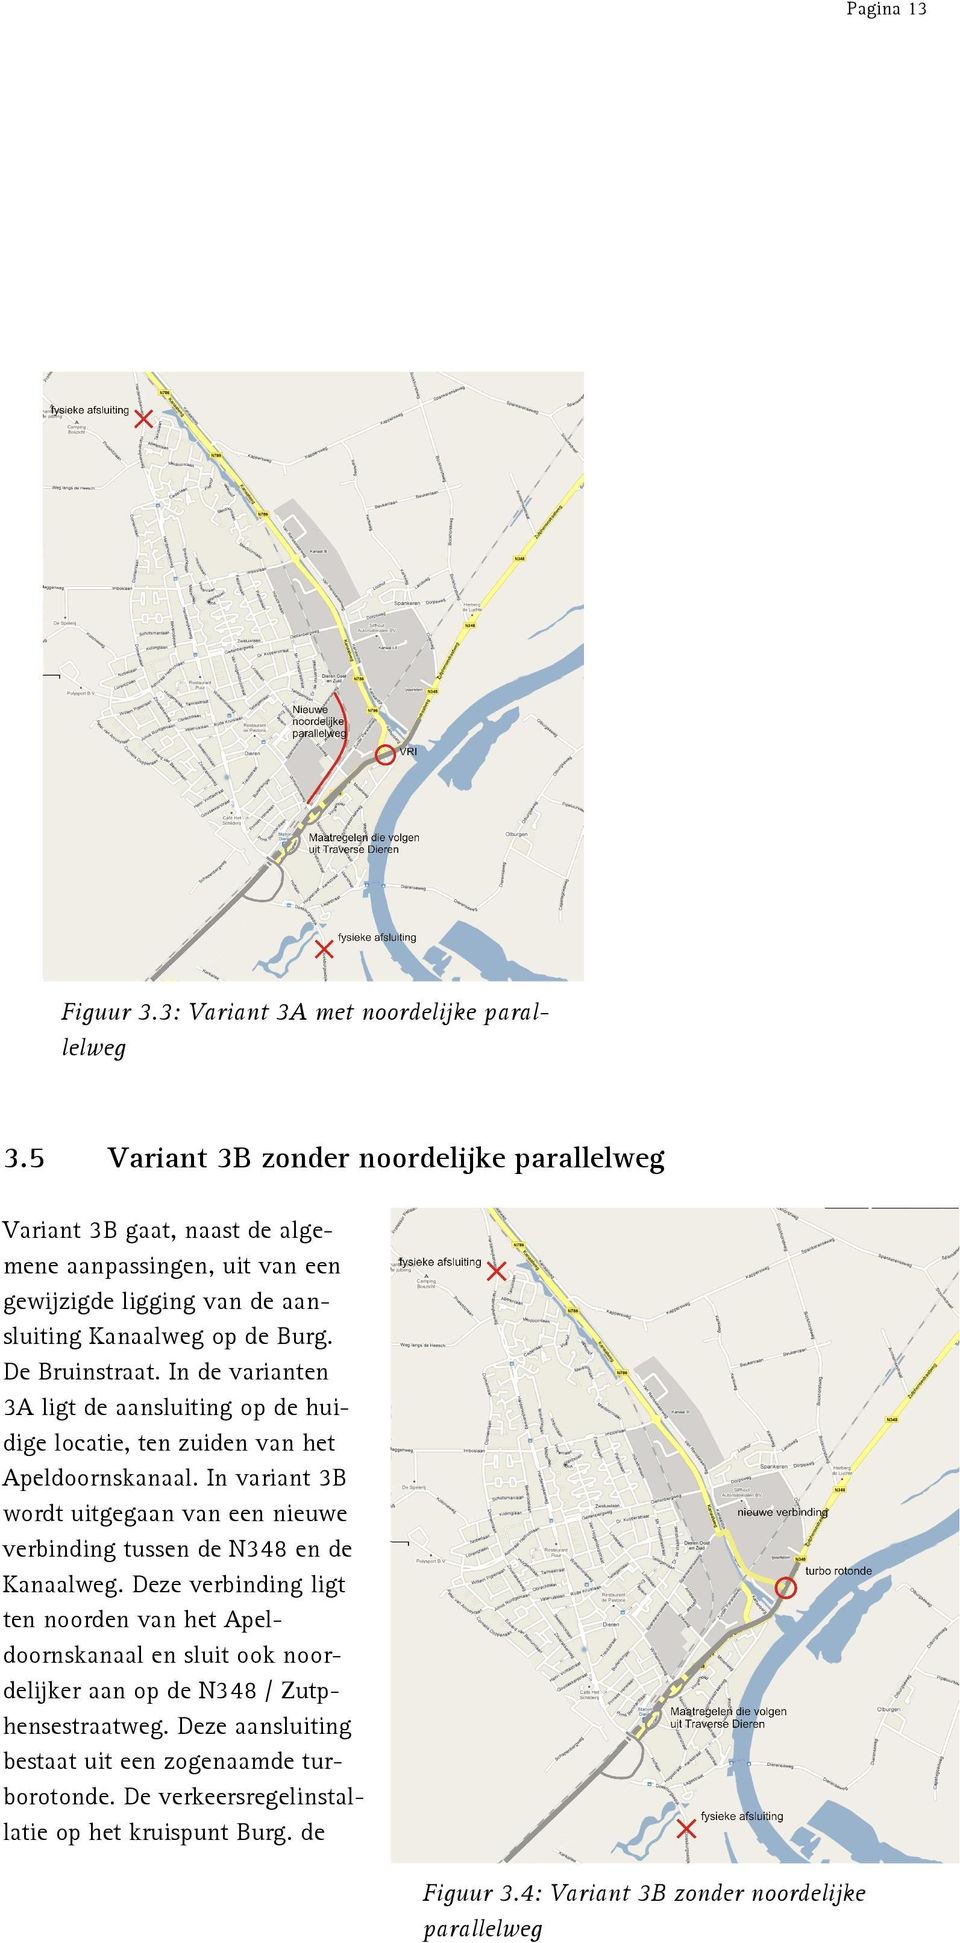 In de varianten 3A ligt de aansluiting op de huidige locatie, ten zuiden van het Apeldoornskanaal.